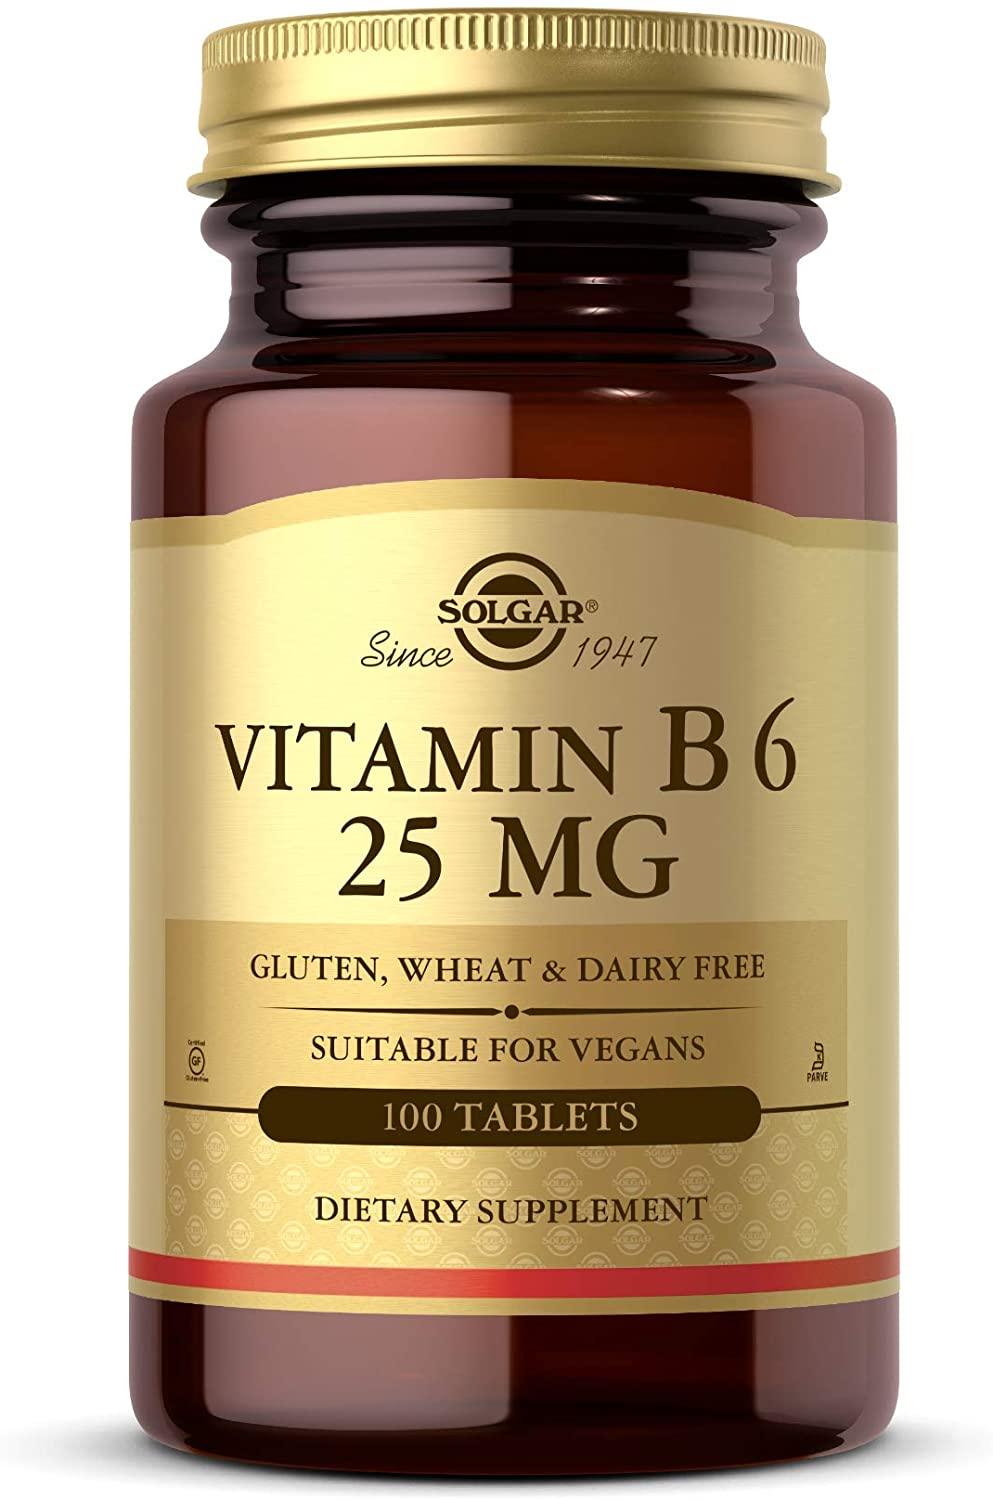 Solgar Vitamine B6 25mg - mondialpharma.com